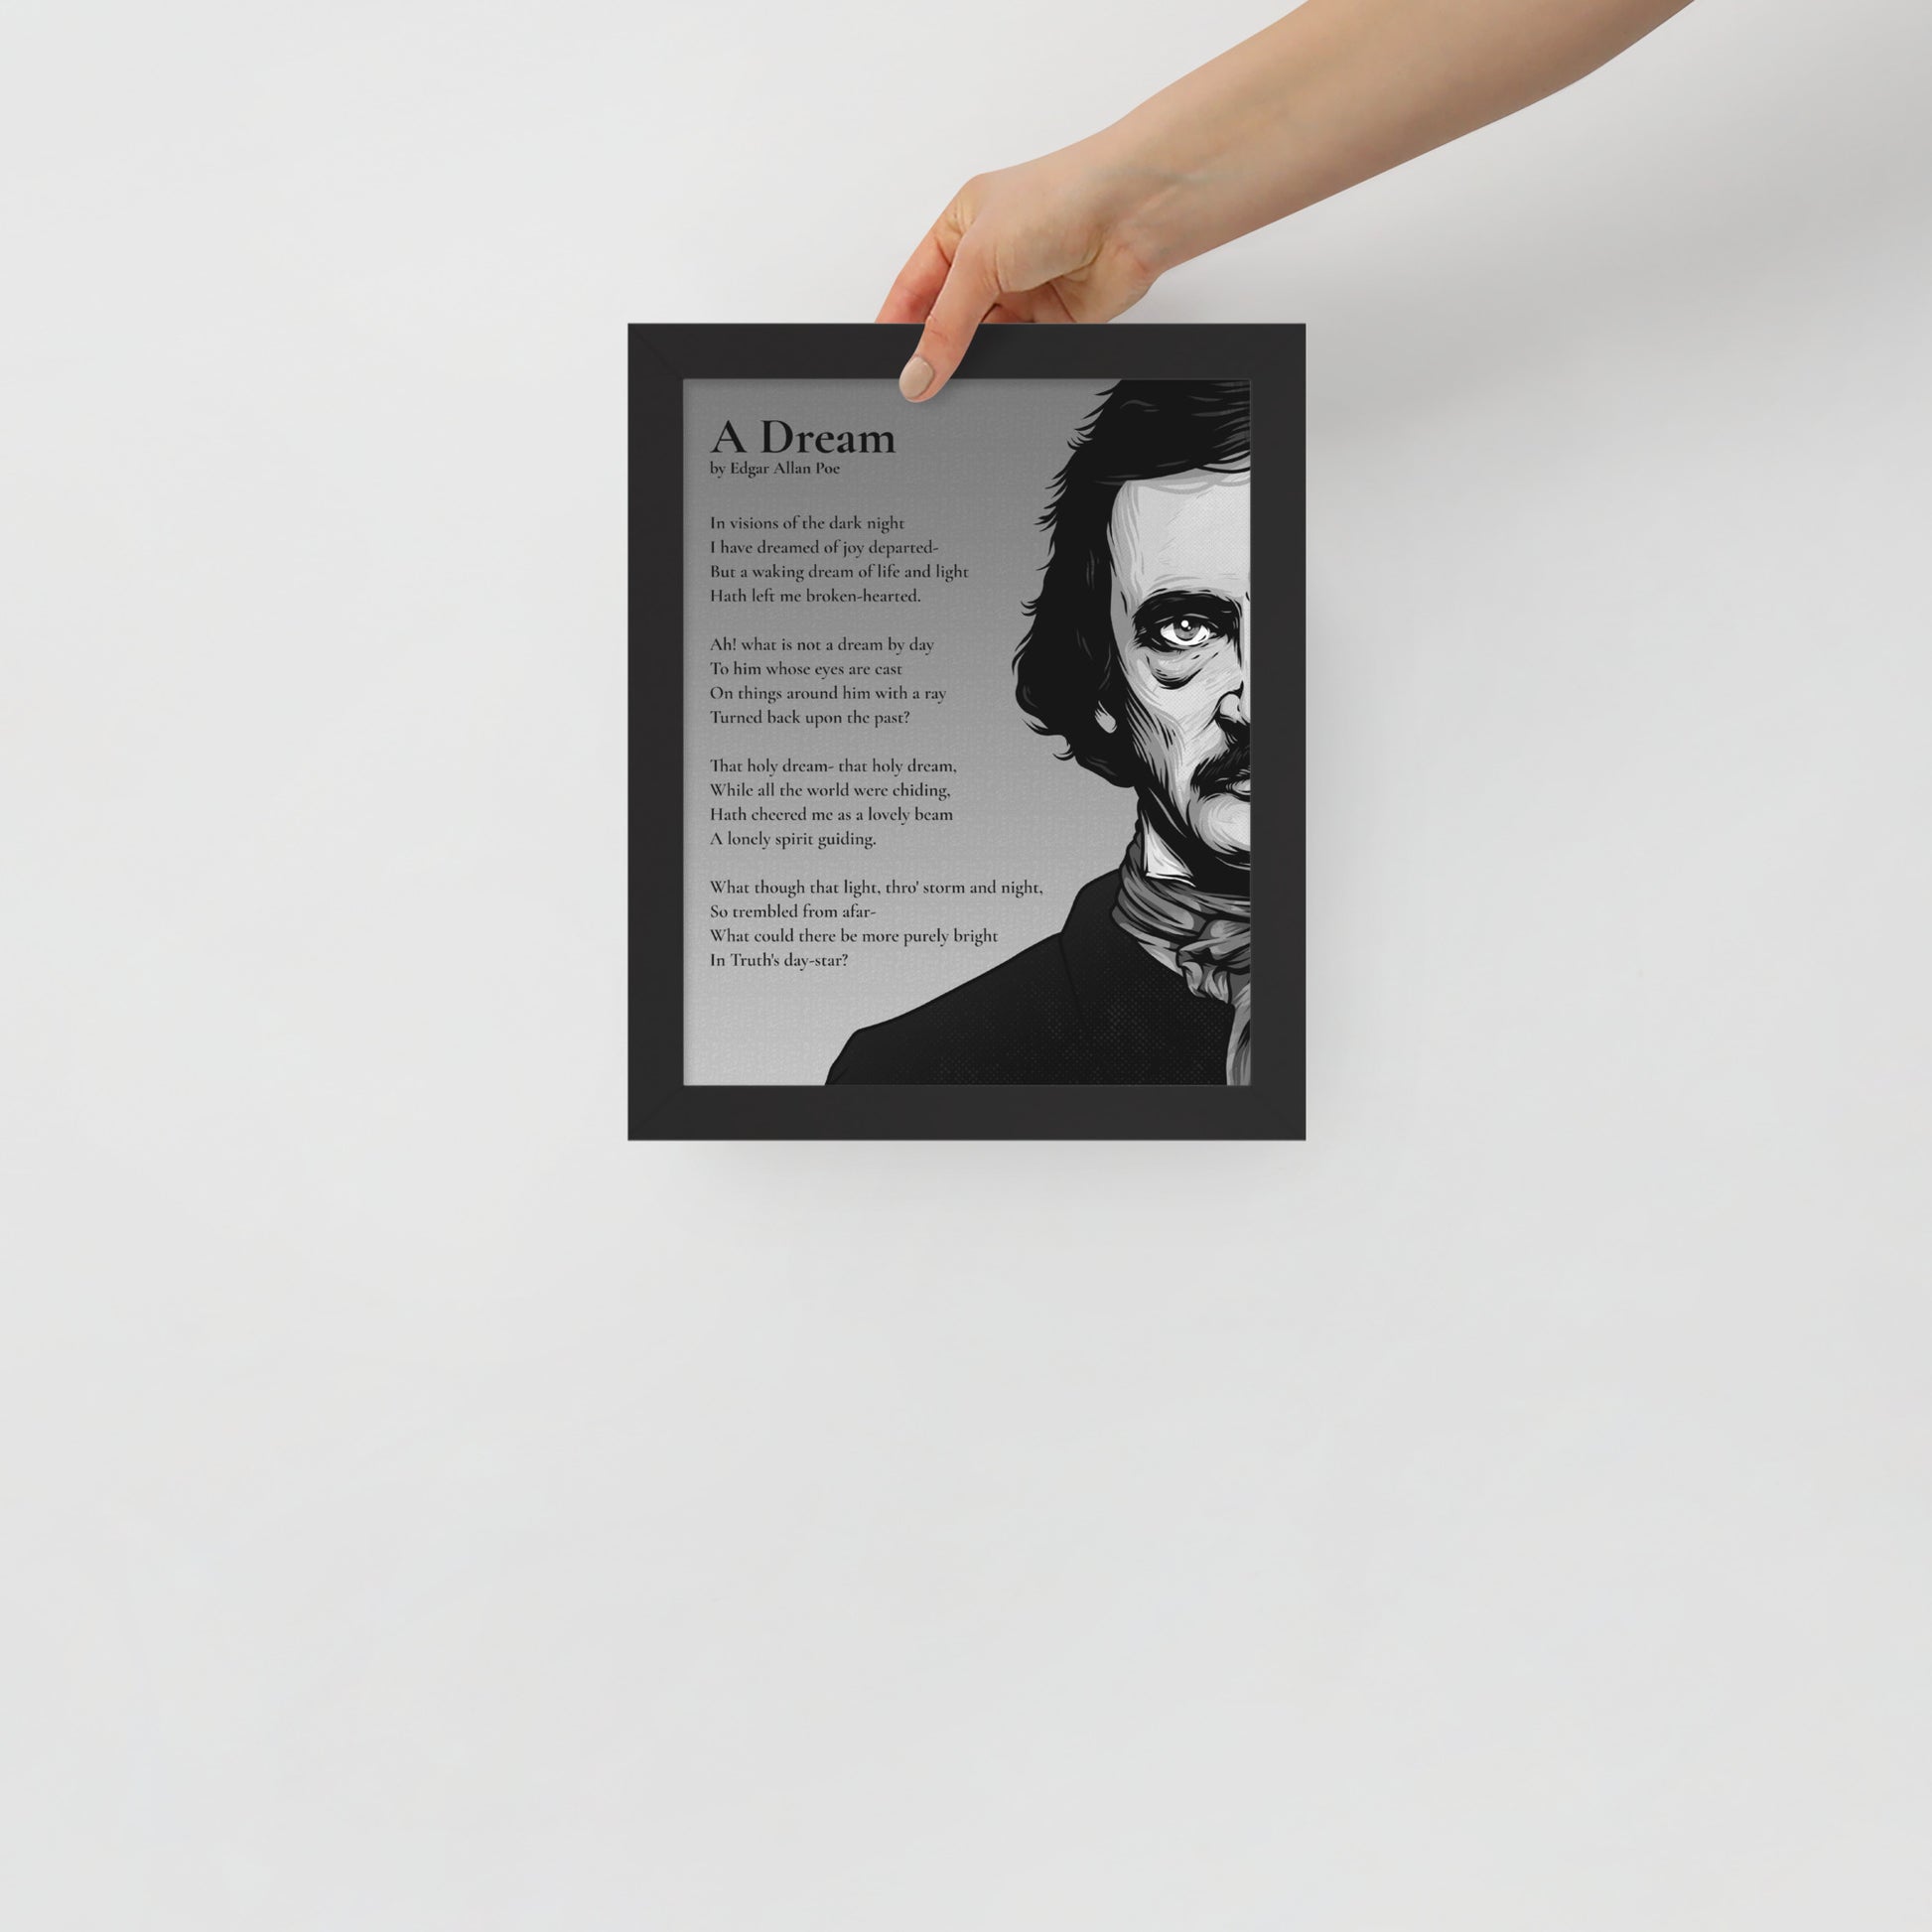 Edgar Allan Poe's 'A Dream' Framed Matted Poster - 8 x 10 Black Frame